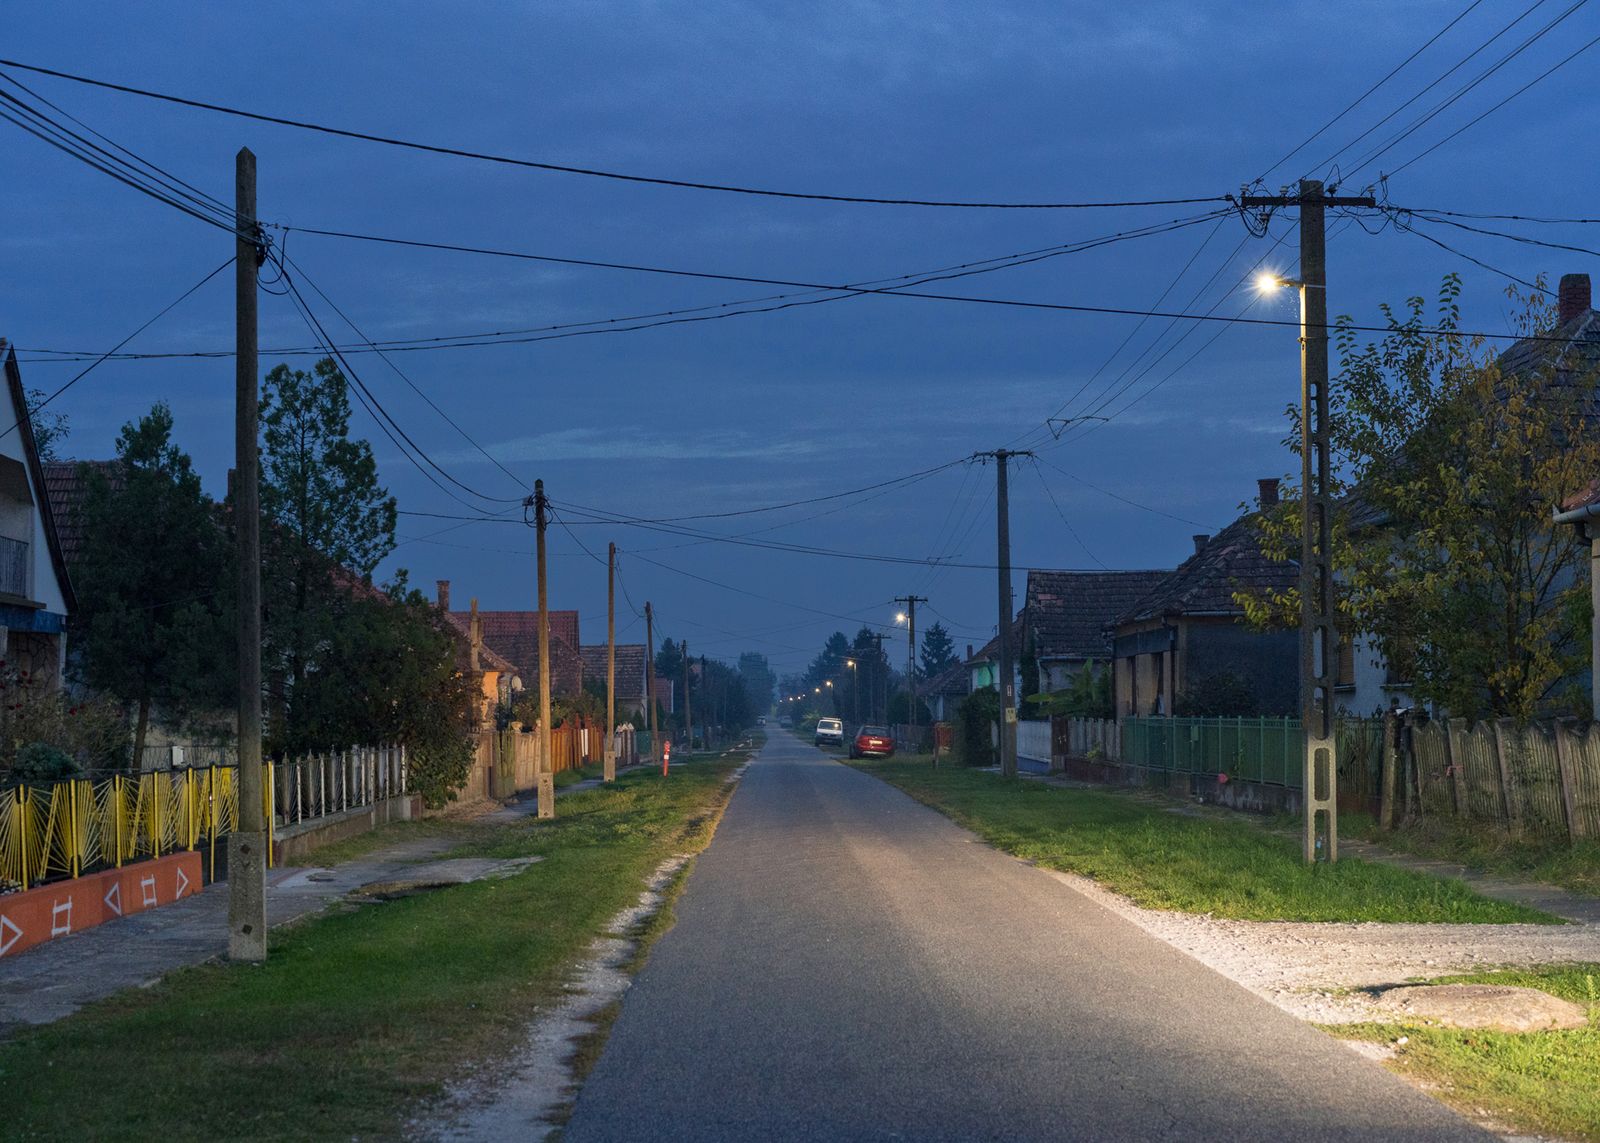 © Hahn Hartung - Street in a small village near Lake Balaton.